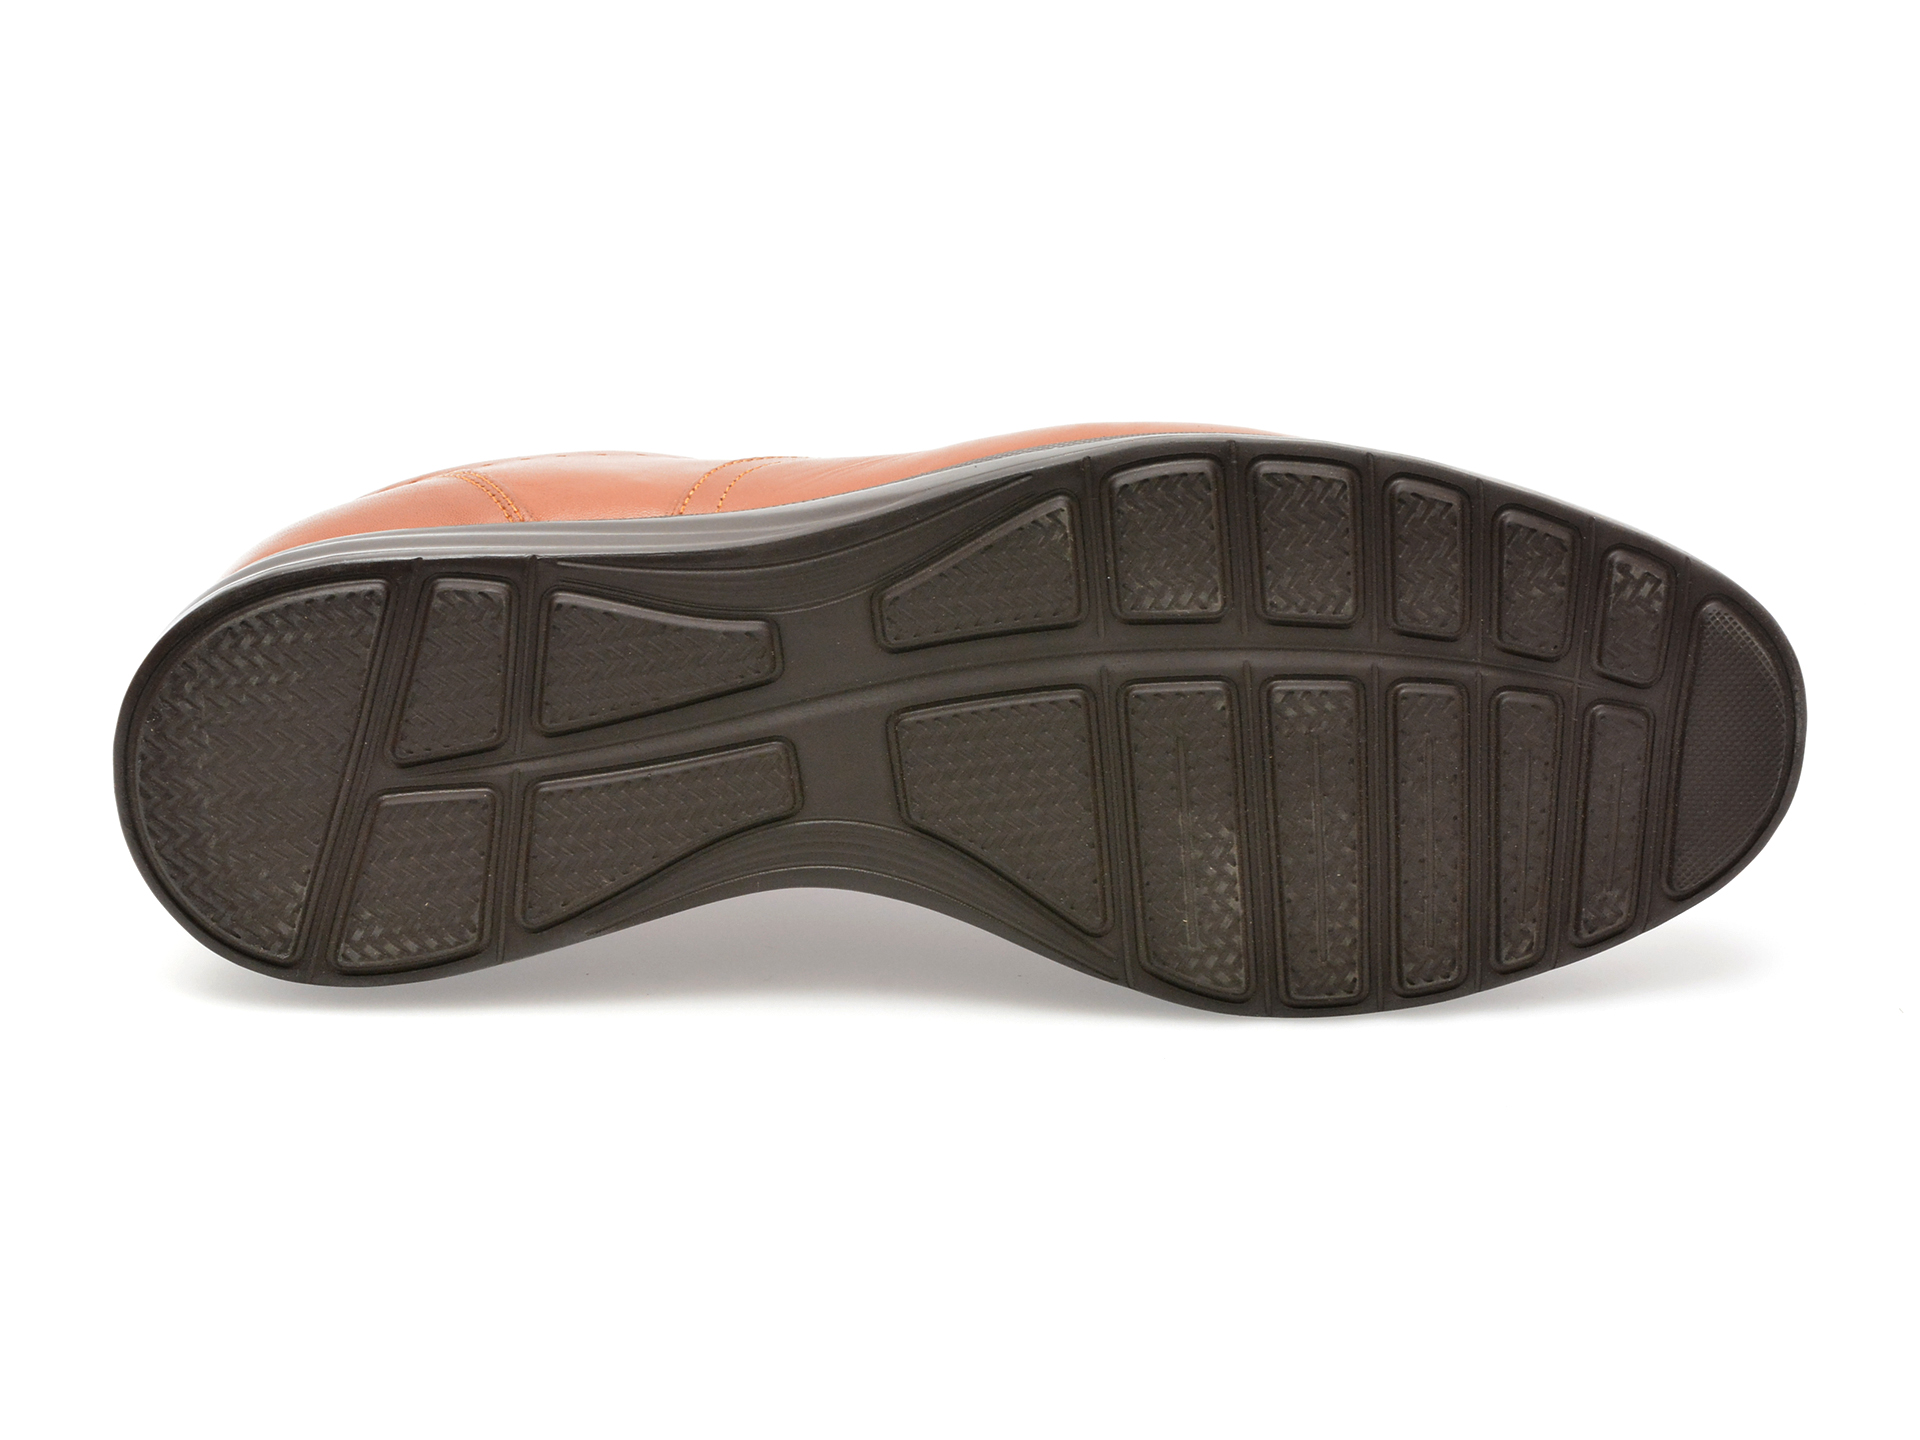 Pantofi OTTER maro, TUR2180, din piele naturala